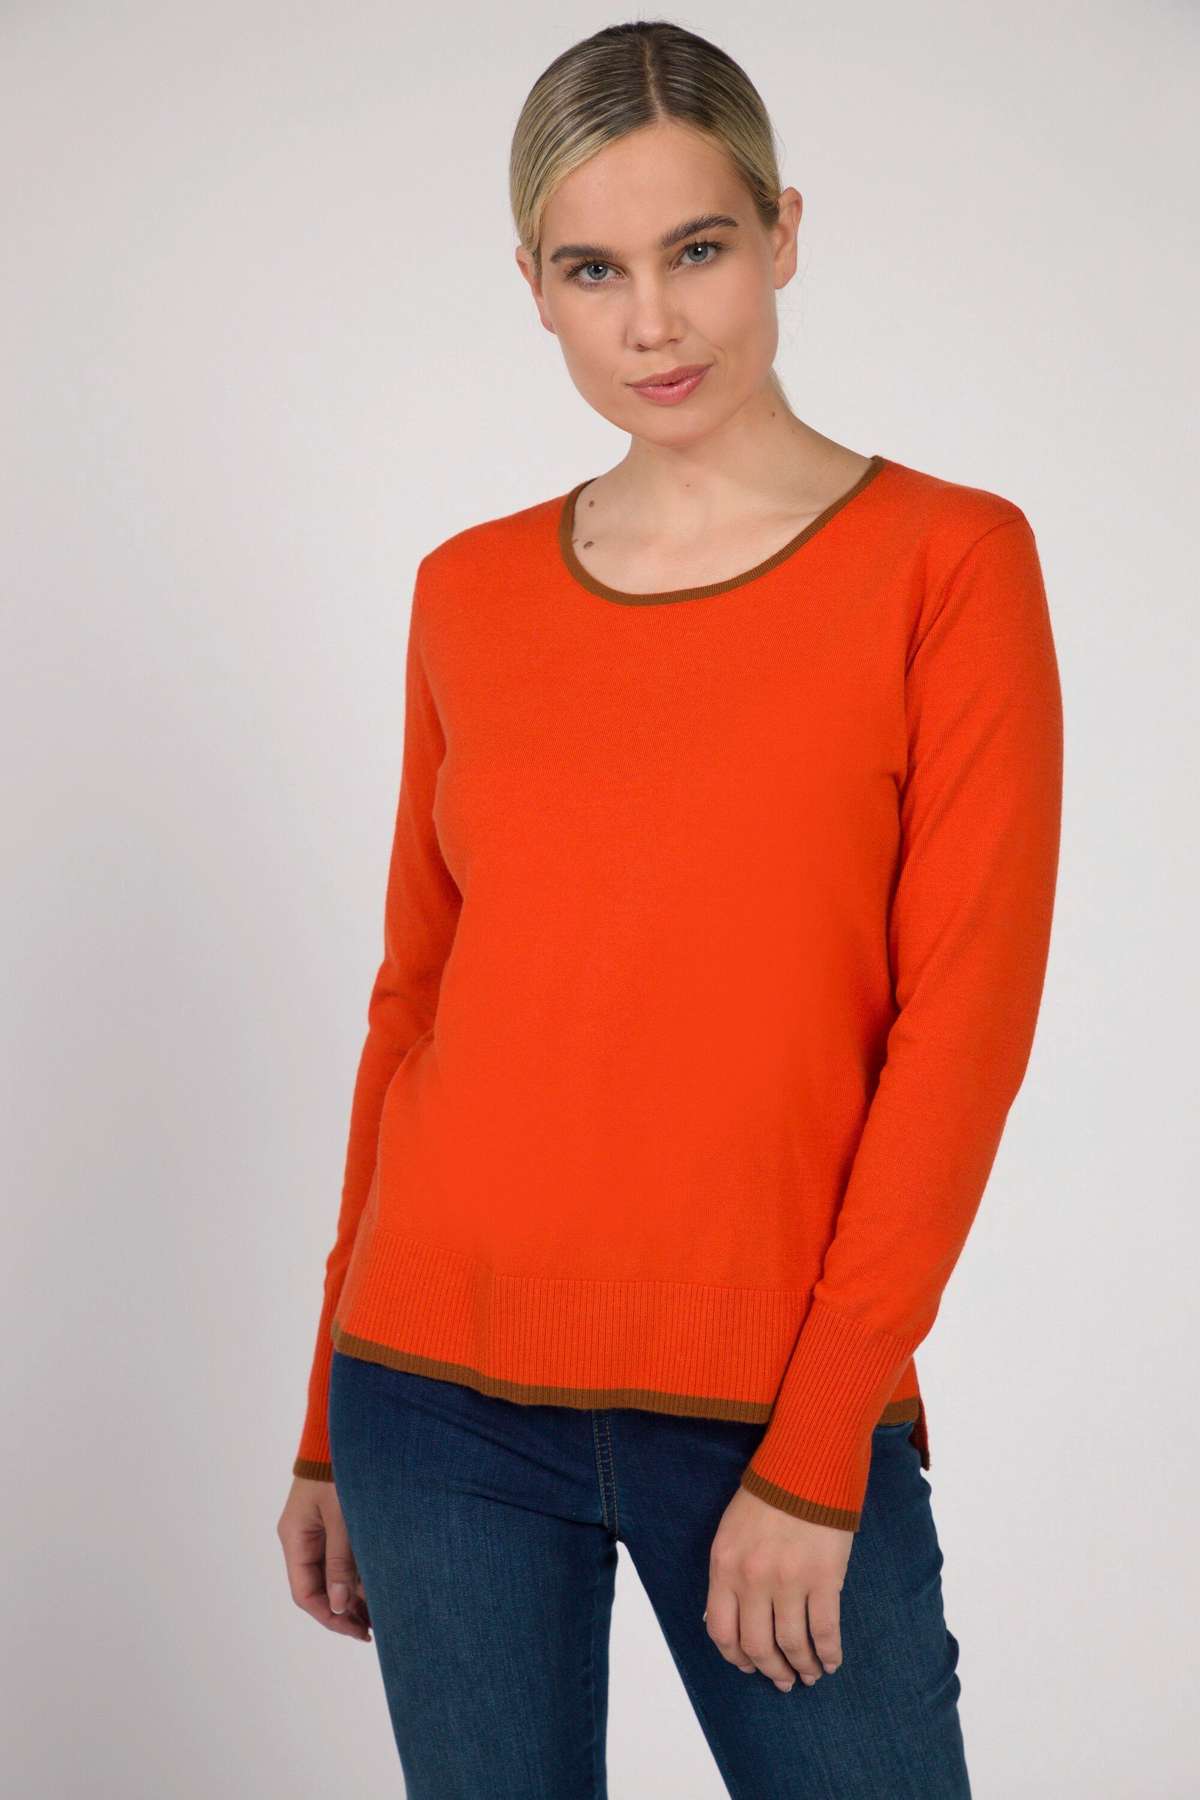 Вязаный свитер-пуловер с цветными краями, круглым вырезом и длинным рукавом